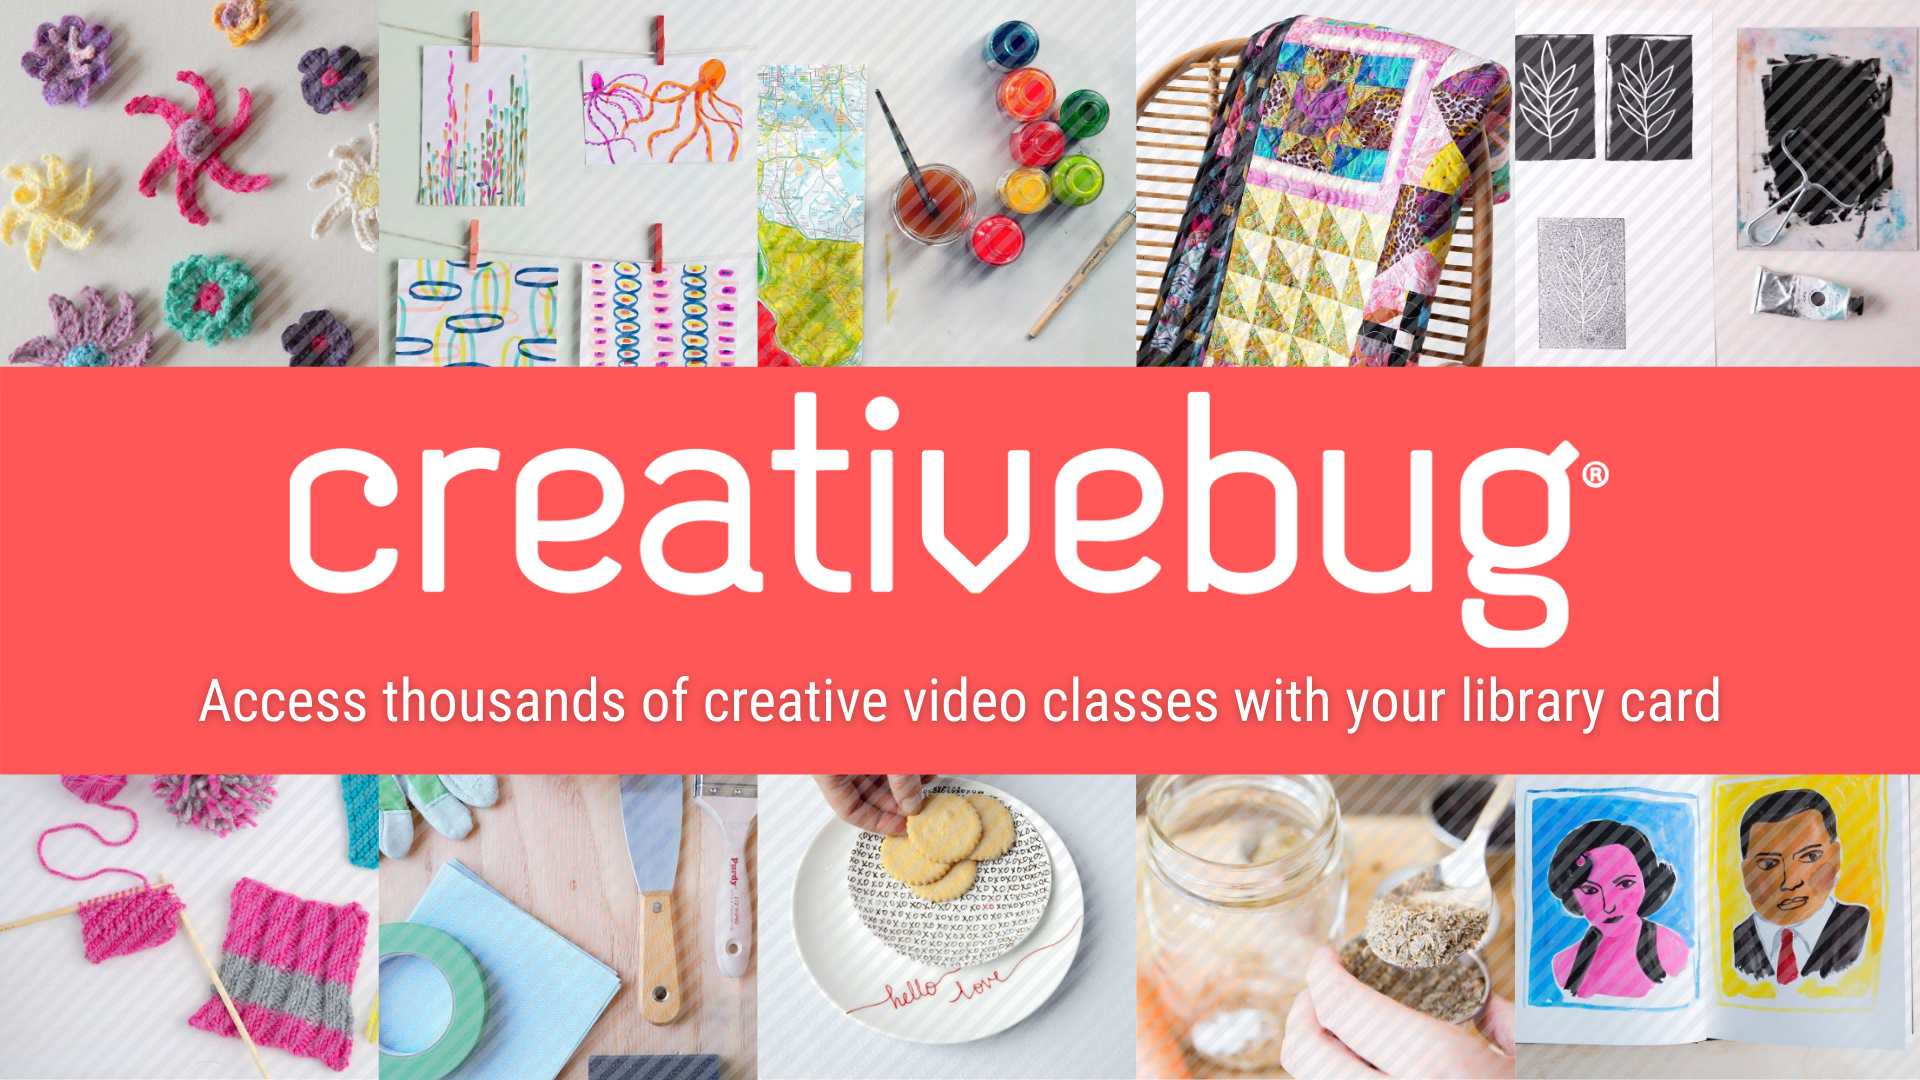 creativebug logo and art